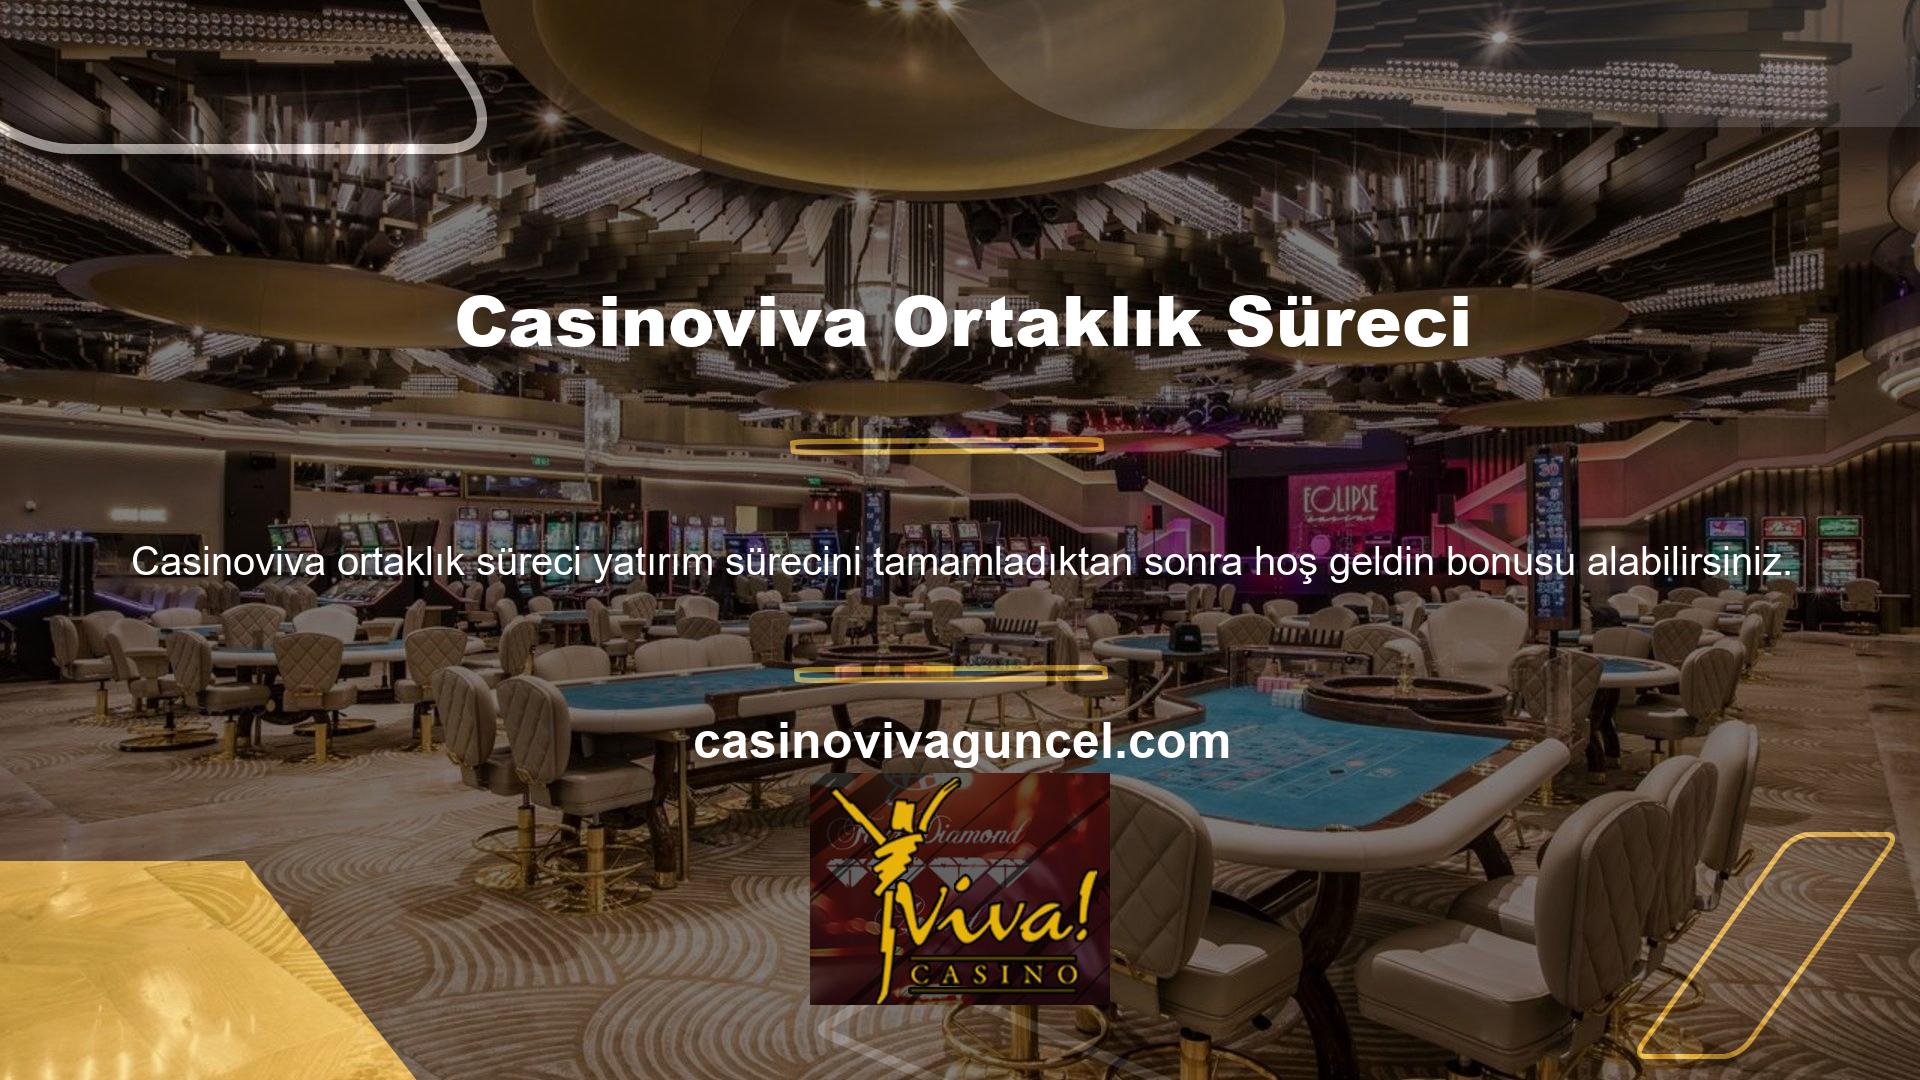 Yabancı online casino sitelerinin ülkemizde pazar payını kaybetmemeleri için önlem almaları gerekmektedir